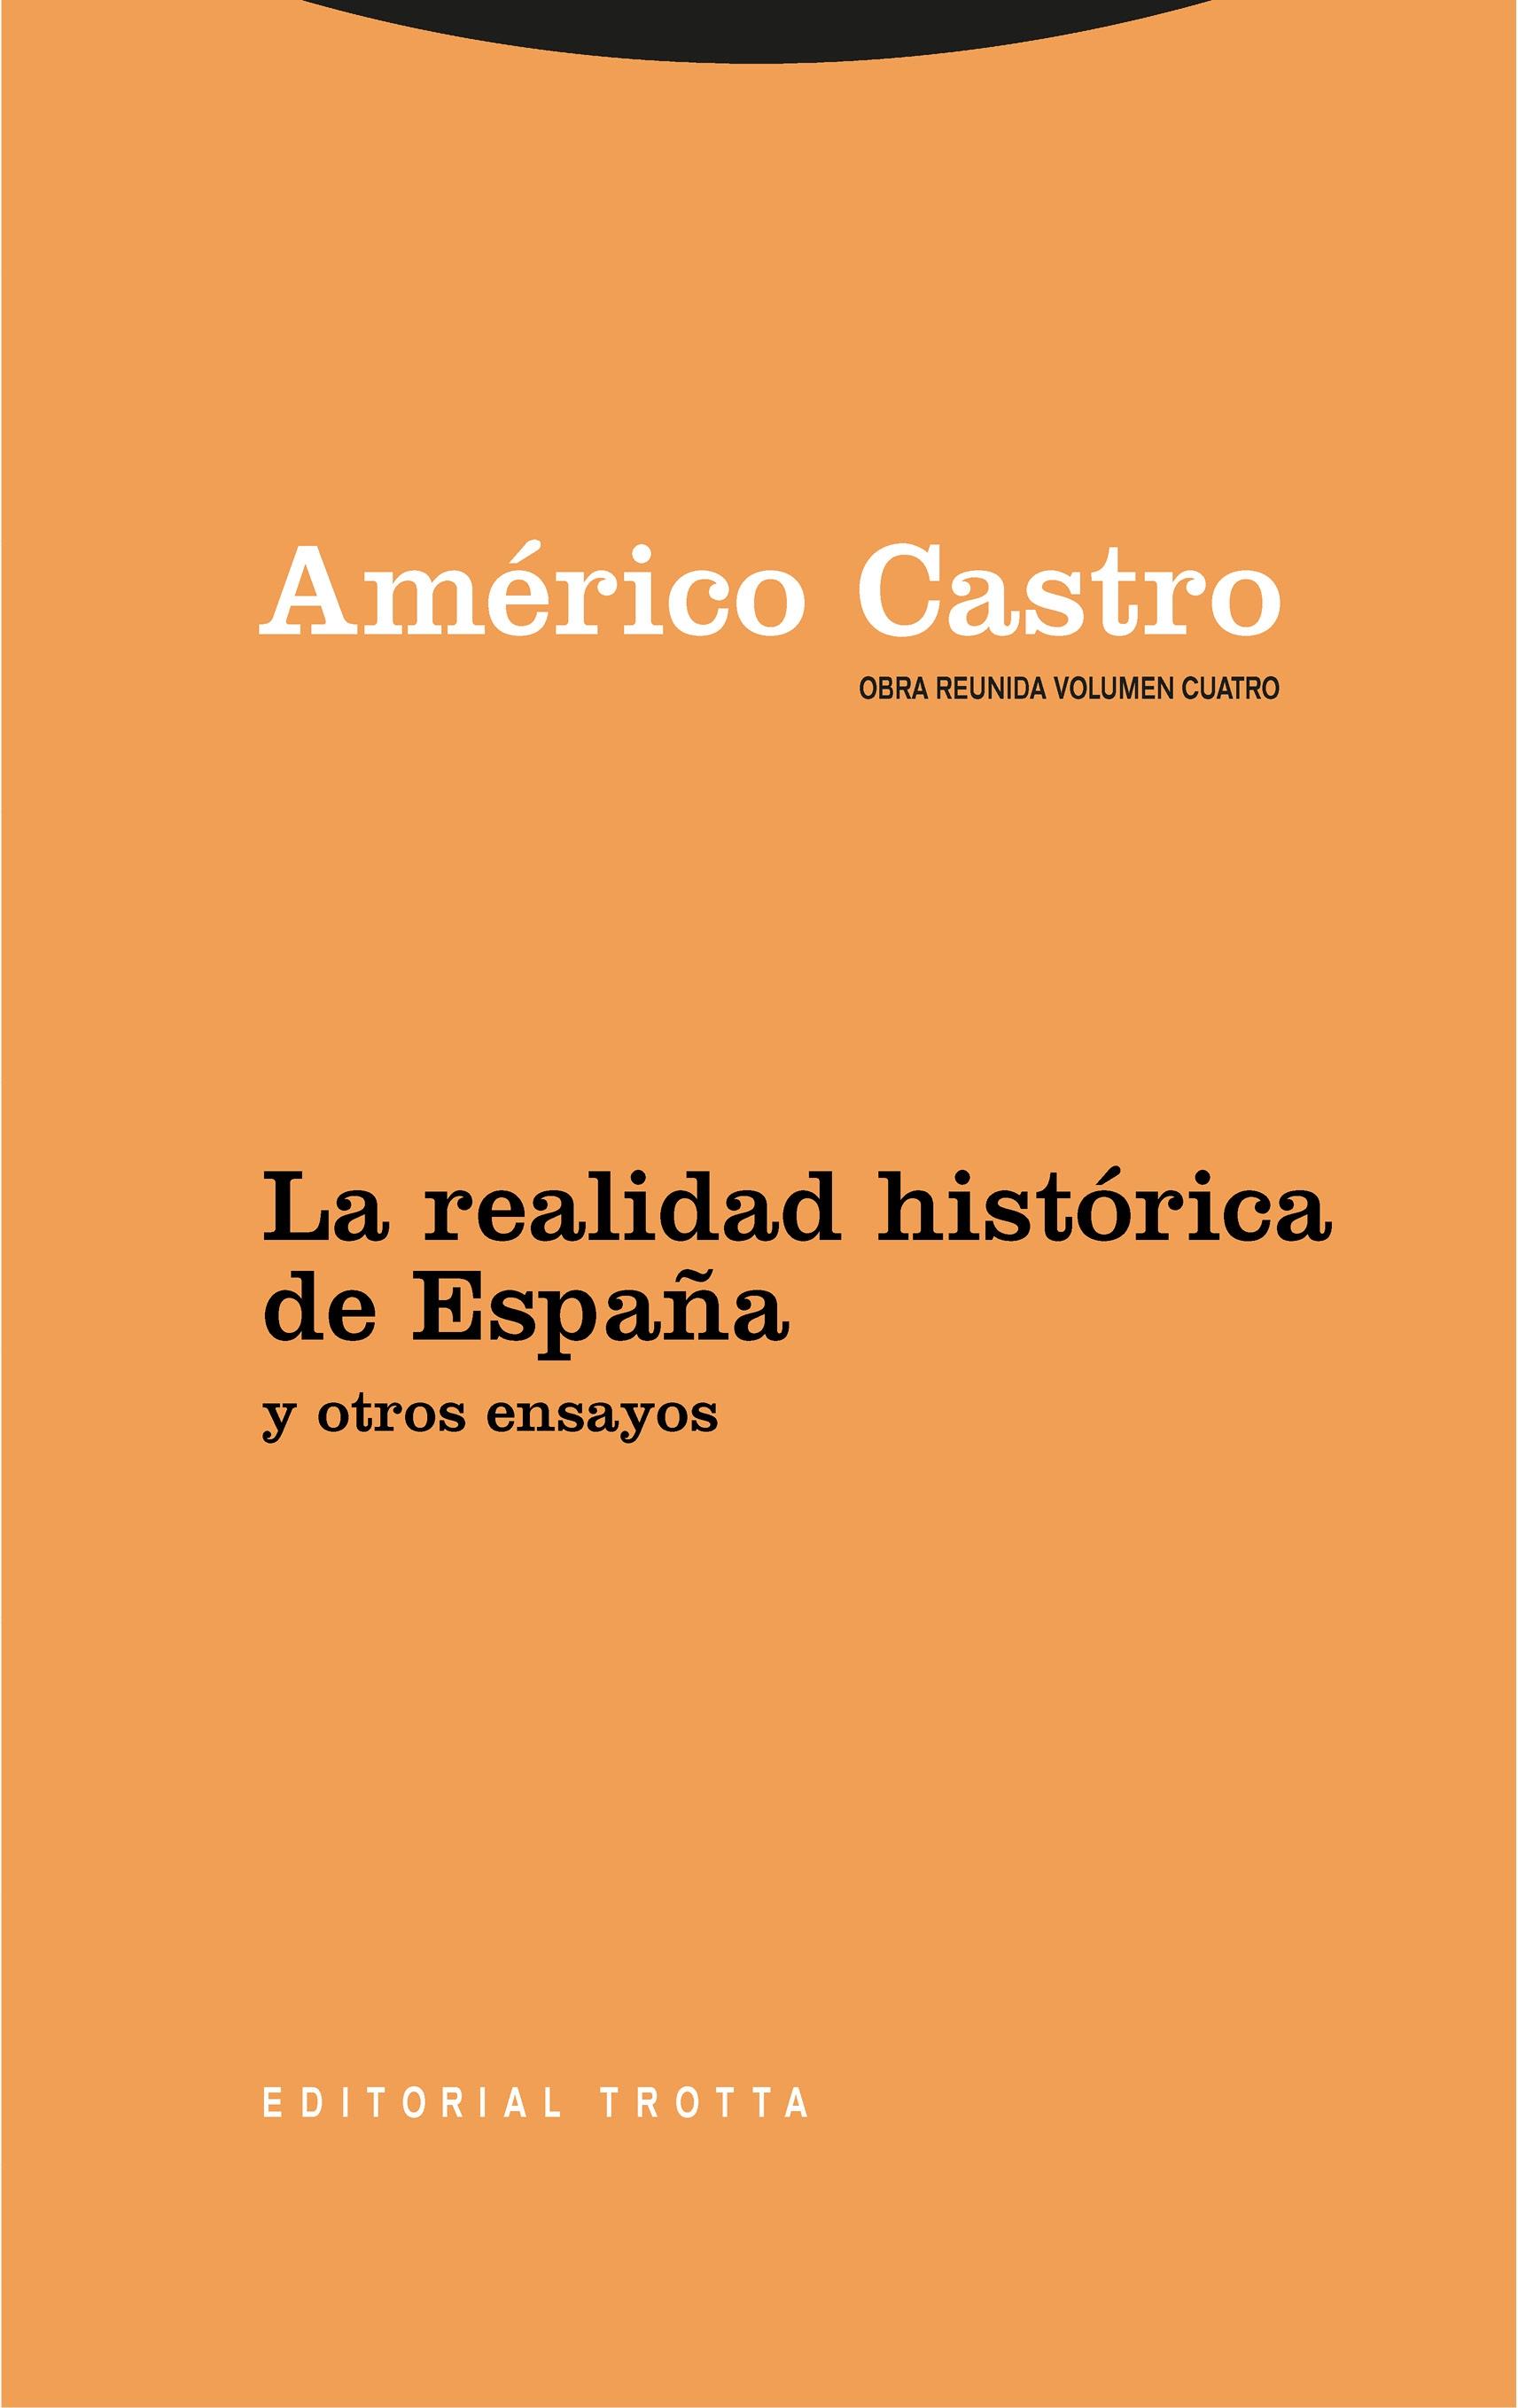 Obra Reunida Americo Castro Vol 4 "La Realidad Historica de España y Otros Ensayos". 